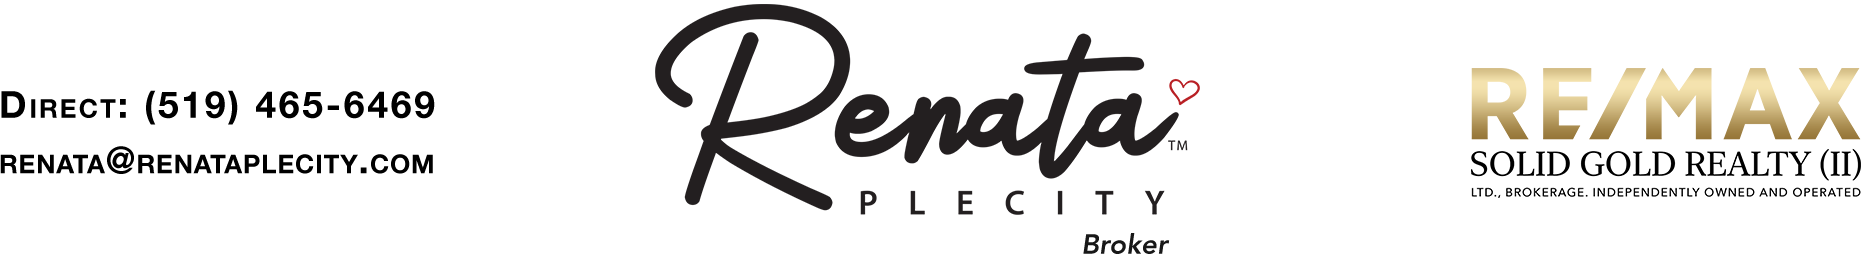 Renata Plecity Graphic Header